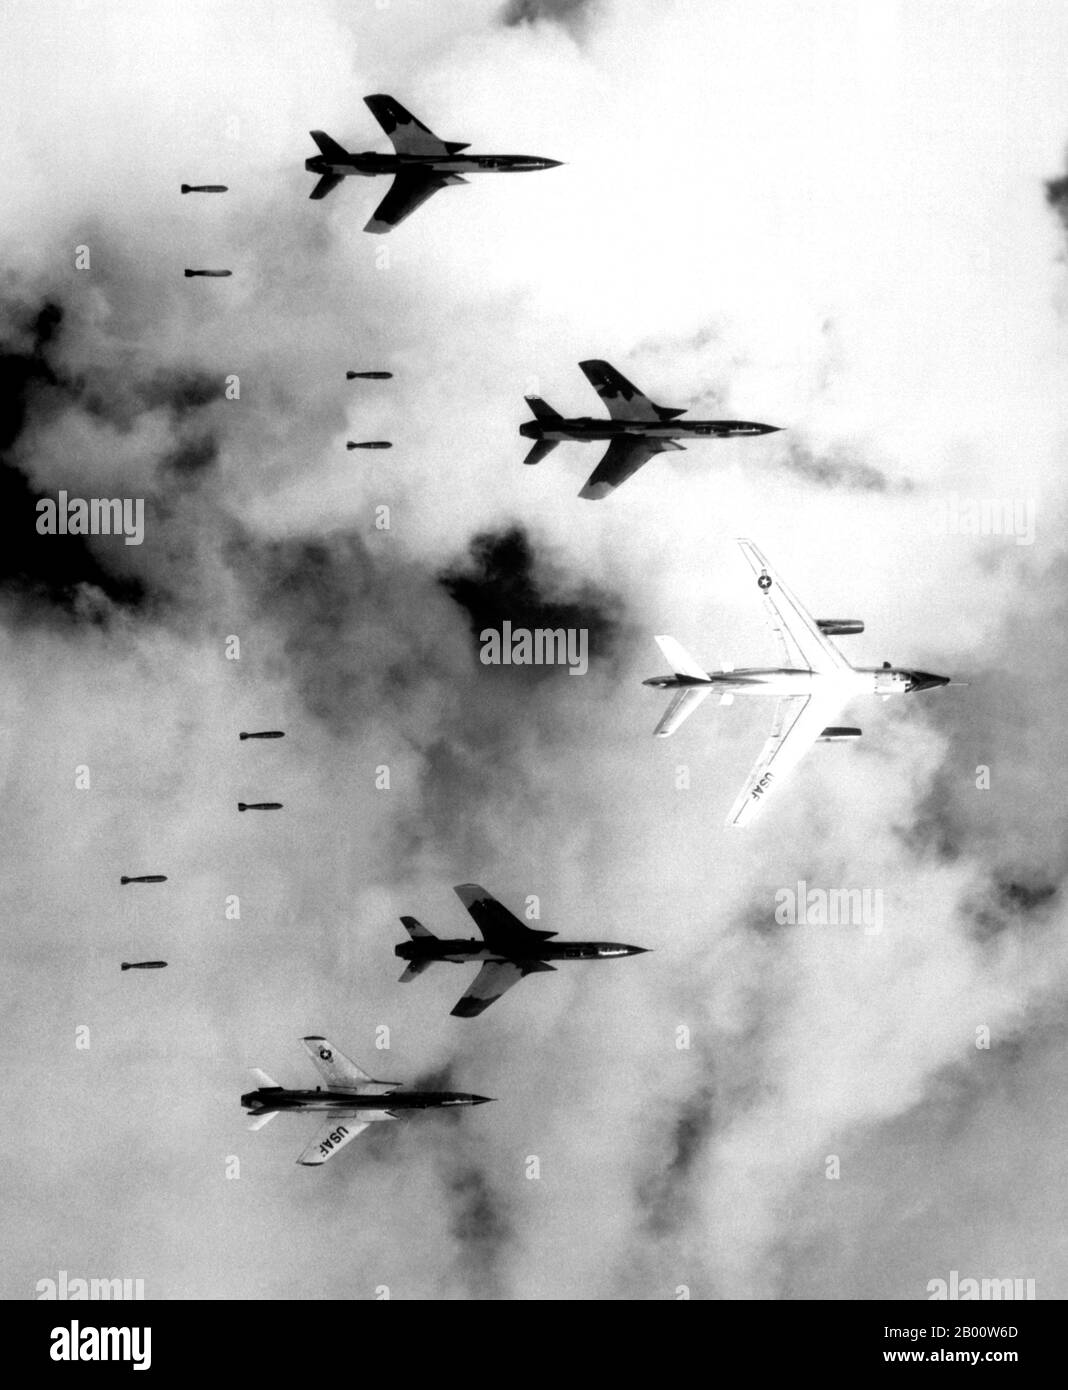 Vietnam: Mit einem B-66 Zerstörer fliegen, USAF F-105 Thunderchiefs bombardieren ein Ziel durch niedrige Wolken über Nordvietnam, 14. Juni 1966. Luftwaffe F-105 Thunderchief Piloten fliegen unter Radarkontrolle mit einem B-66 Zerstörer und bombardieren ein militärisches Ziel durch niedrige Wolken über dem südlichen Panhandle von Nordvietnam. Juni 14, 1966. Public Domain-Bild von LT. Col. Cecil J. Poss, USAF. Stockfoto